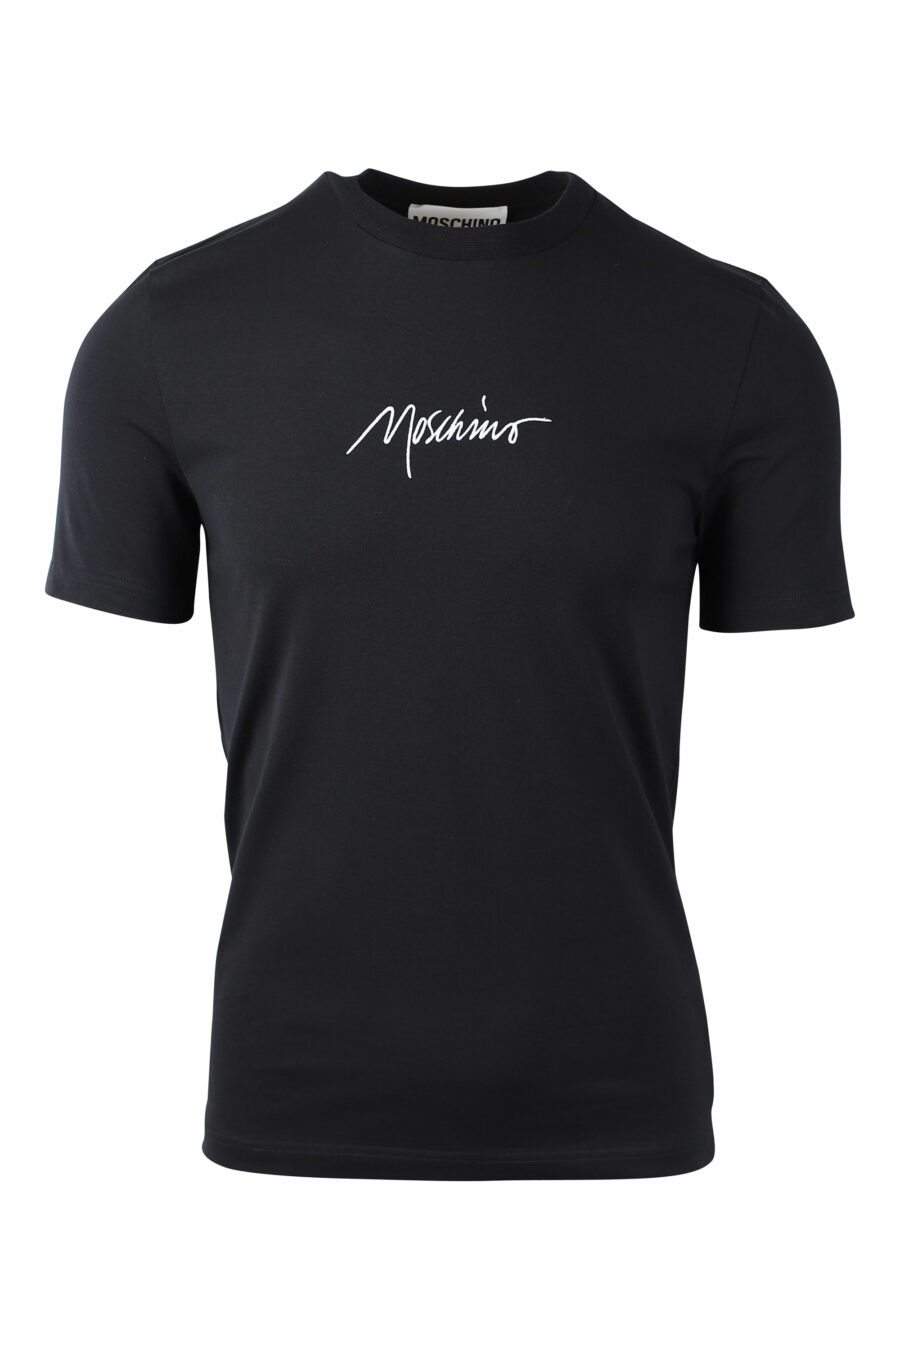 Camiseta negra con logo "signature" - IMG 1485